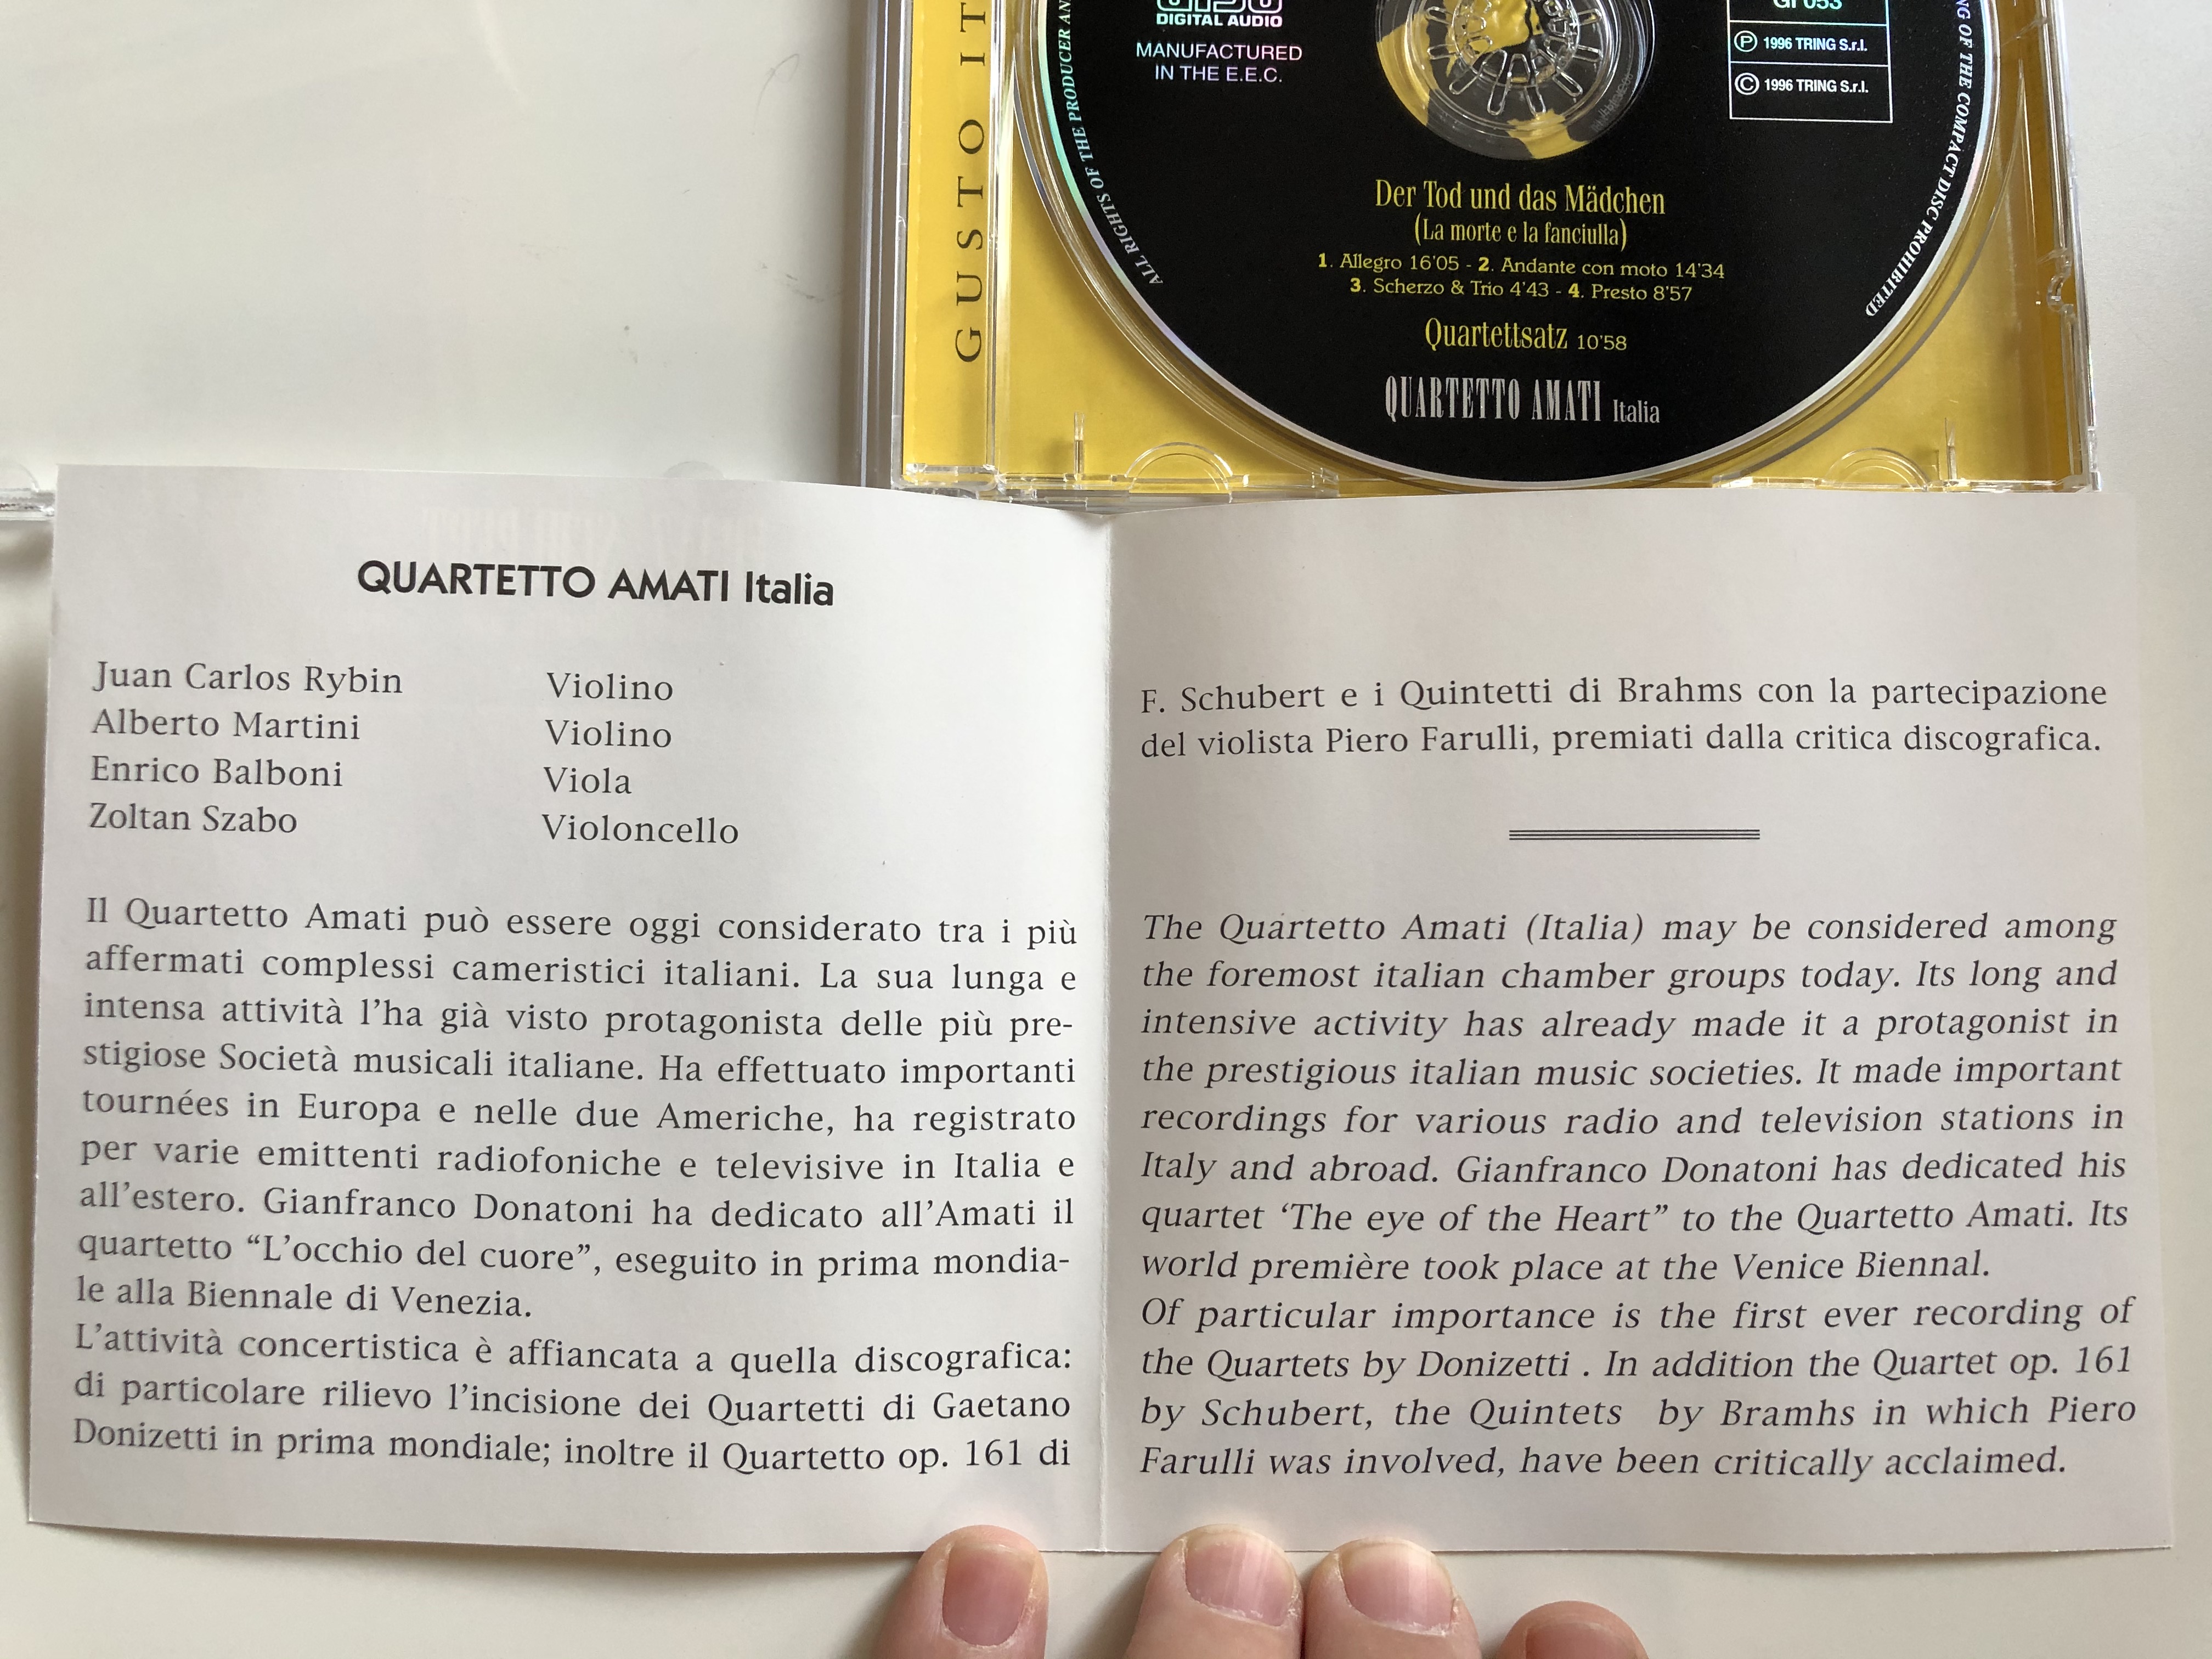 franz-schubert-der-tod-und-das-madchen-la-morte-e-la-fanciulla-quartetto-amati-italia-gusto-italiano-audio-cd-1996-gi-053-2-.jpg